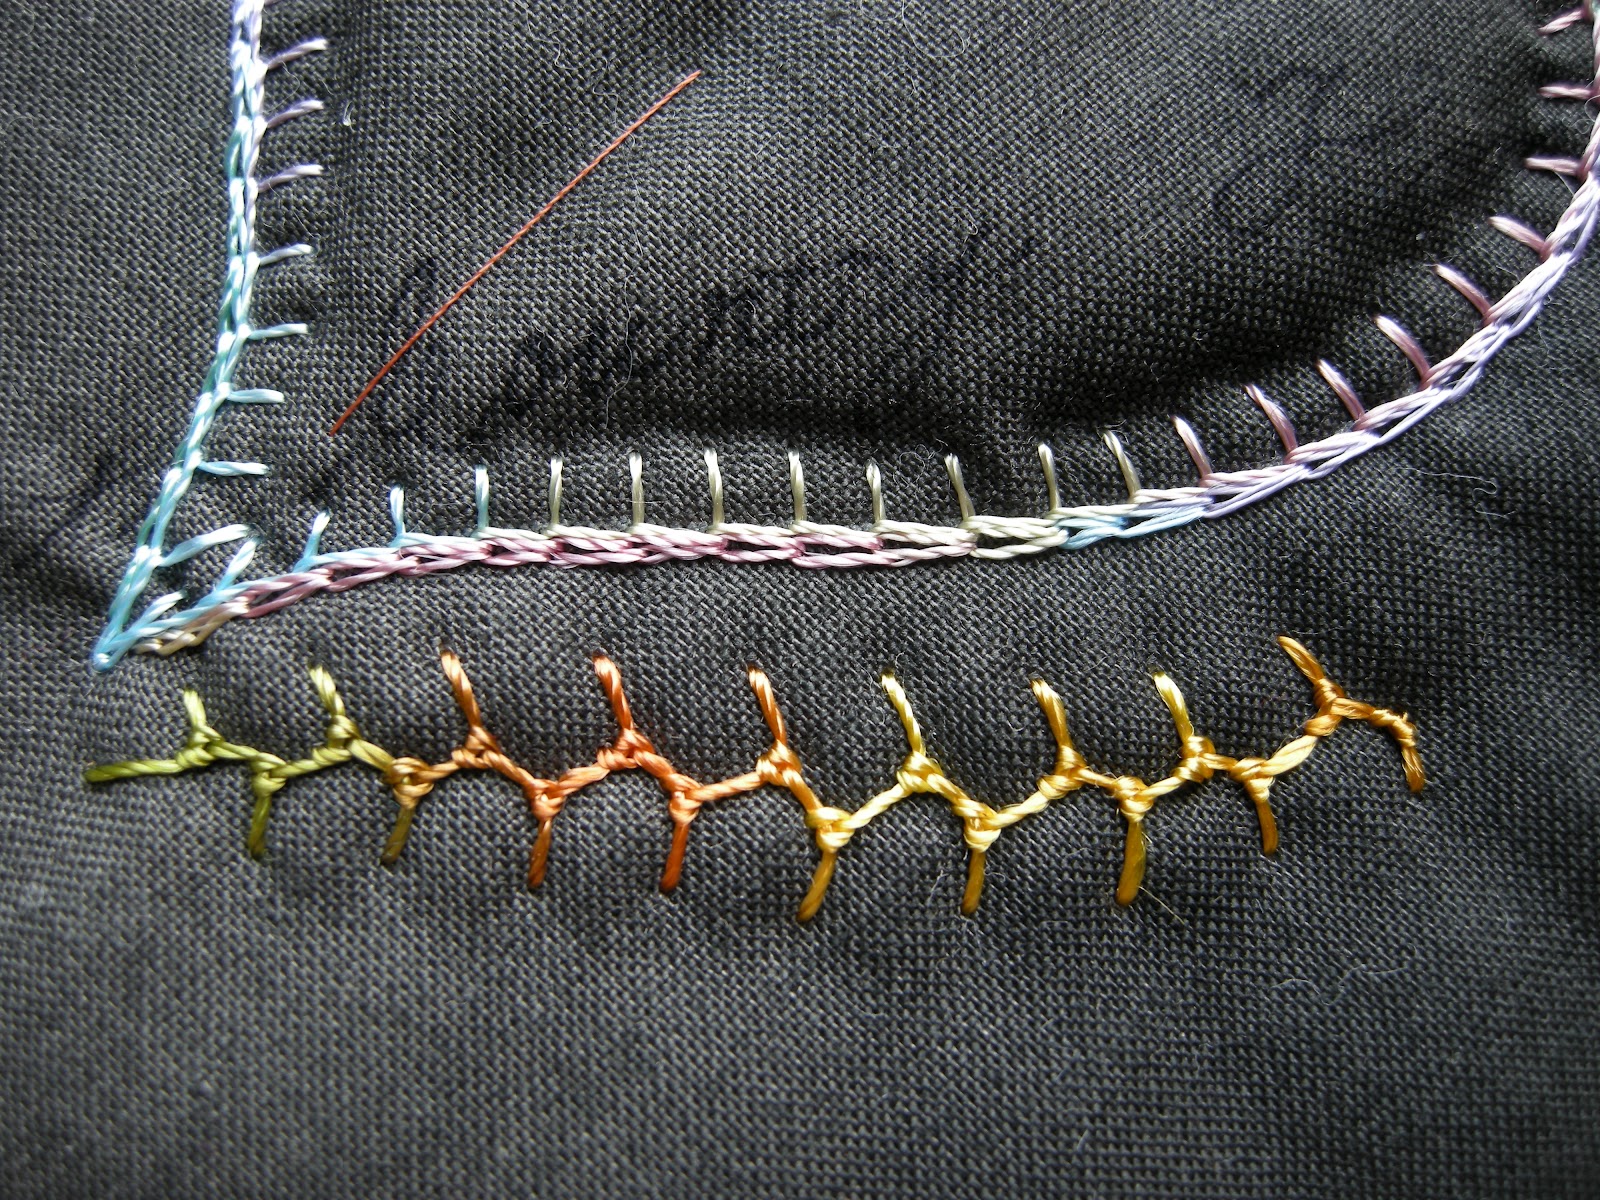 Queenie's Needlework: Knotted Cretan Stitch